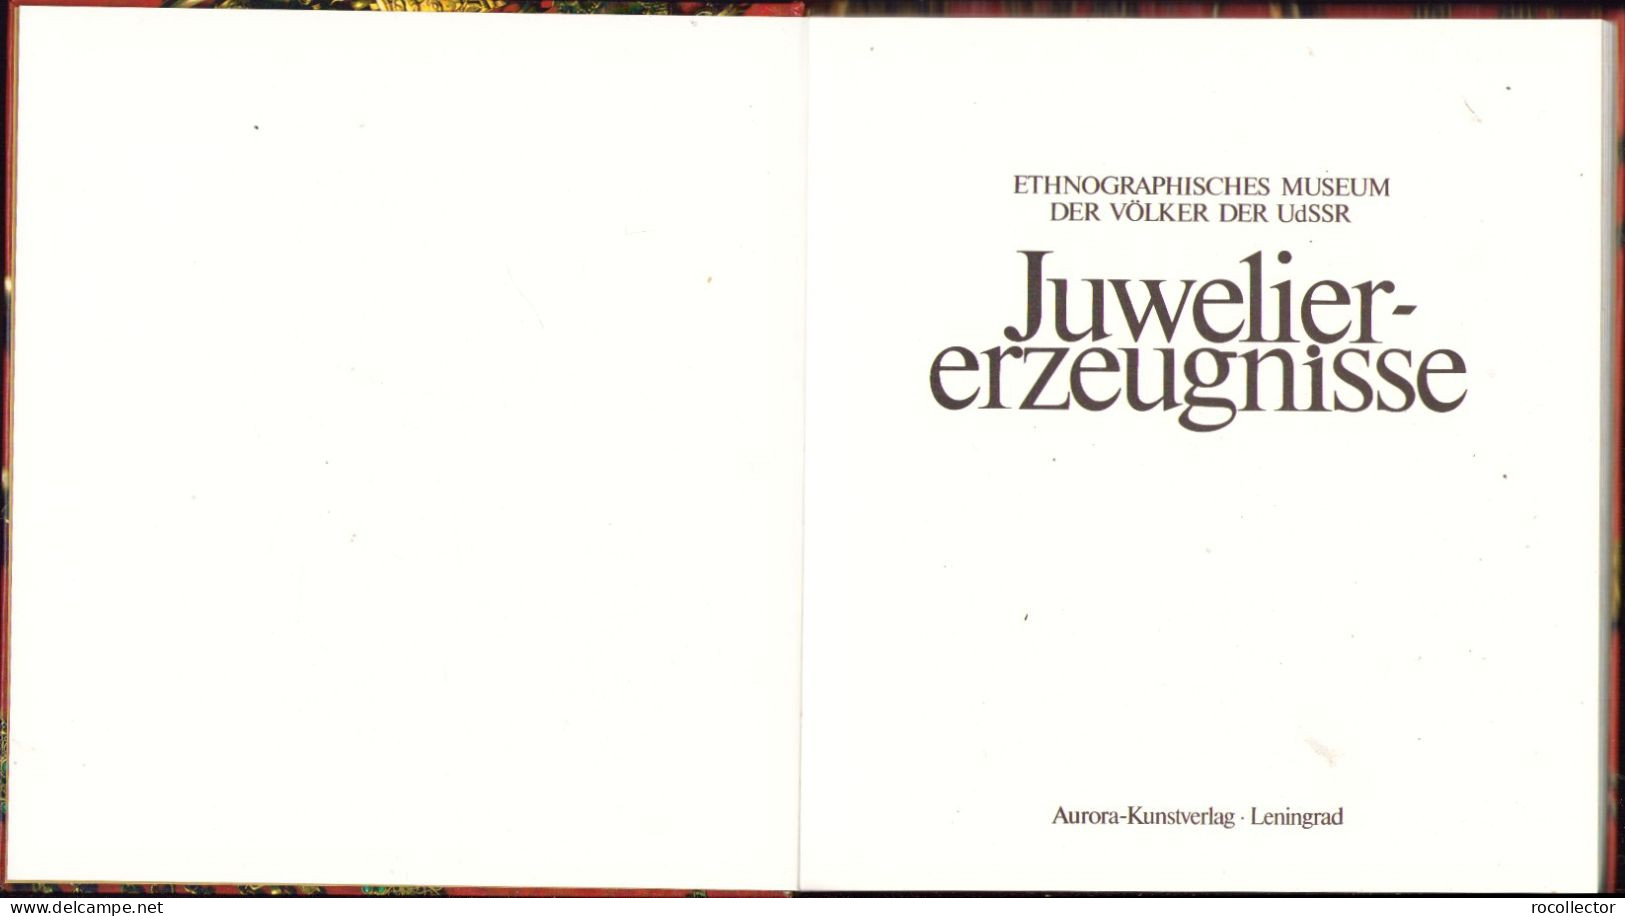 Juwelier-erzeugnisse Zusammengestelt Von Galina Komleva 1988 Ethnographisches Museum Der Völker Der UdSSR Leningrad - Oude Boeken